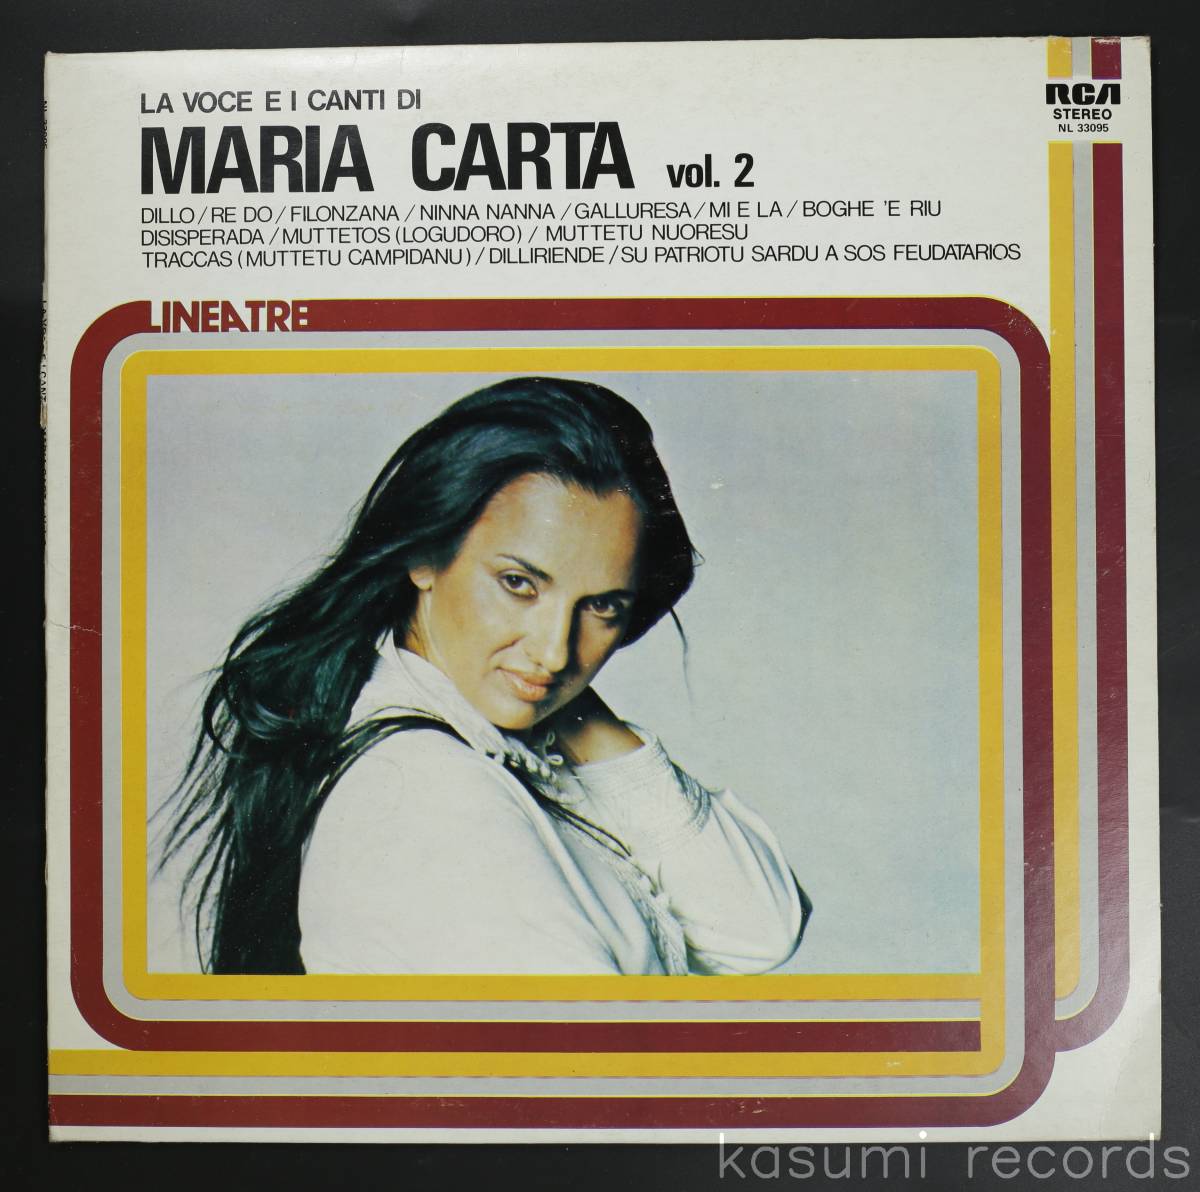 【伊盤LP】MARIA CARTA/LA VOCE E I CANTI DI MARIA CARTA VOL. 2(並品,盤良,80年ベスト,サルディーニャSSWTRAD,Italy)_画像1